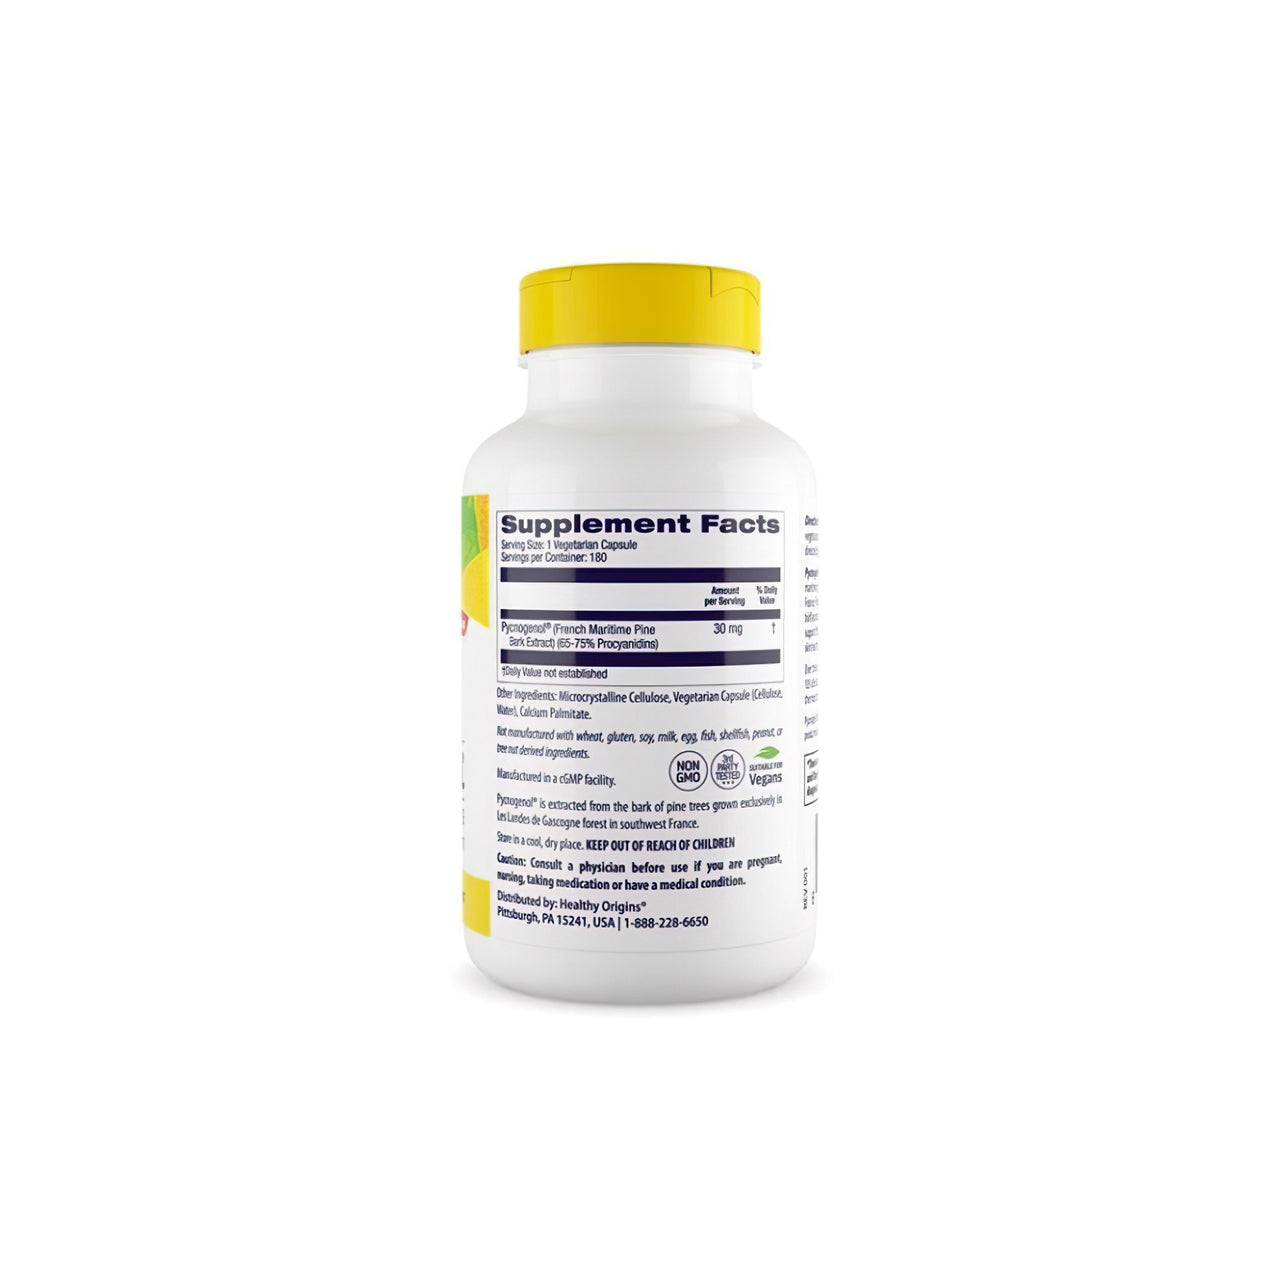 Eine Nahrungsergänzungsflasche mit Pycnogenol 30 mg 180 Vegikapseln, einem starken Antioxidans für die kardiovaskuläre Gesundheit, präsentiert auf einem sauberen weißen Hintergrund, von Healthy Origins.